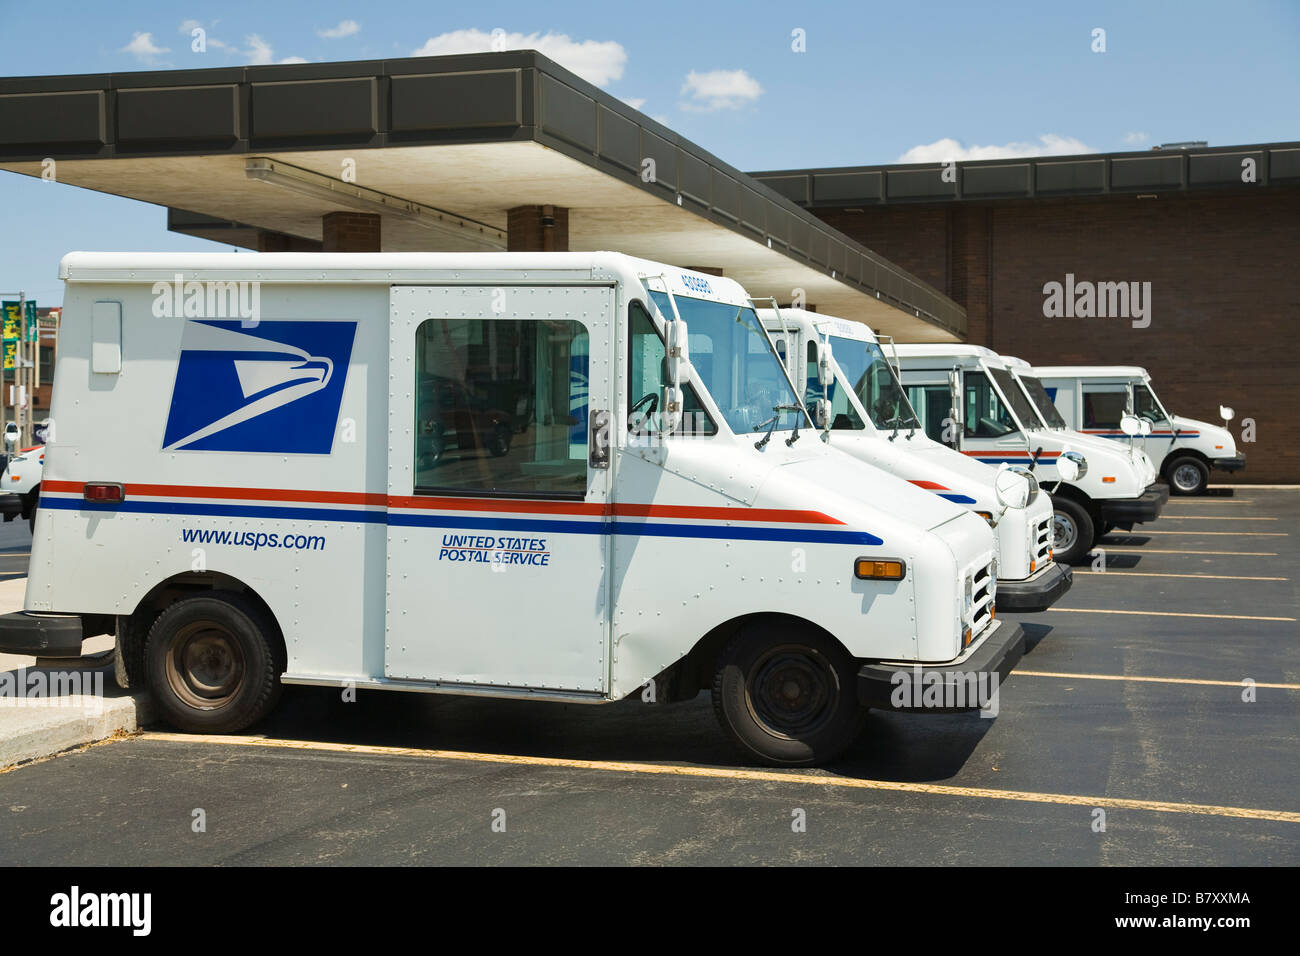 DeKalb ILLINOIS United States Postal Service mail camions garés à post office building Banque D'Images